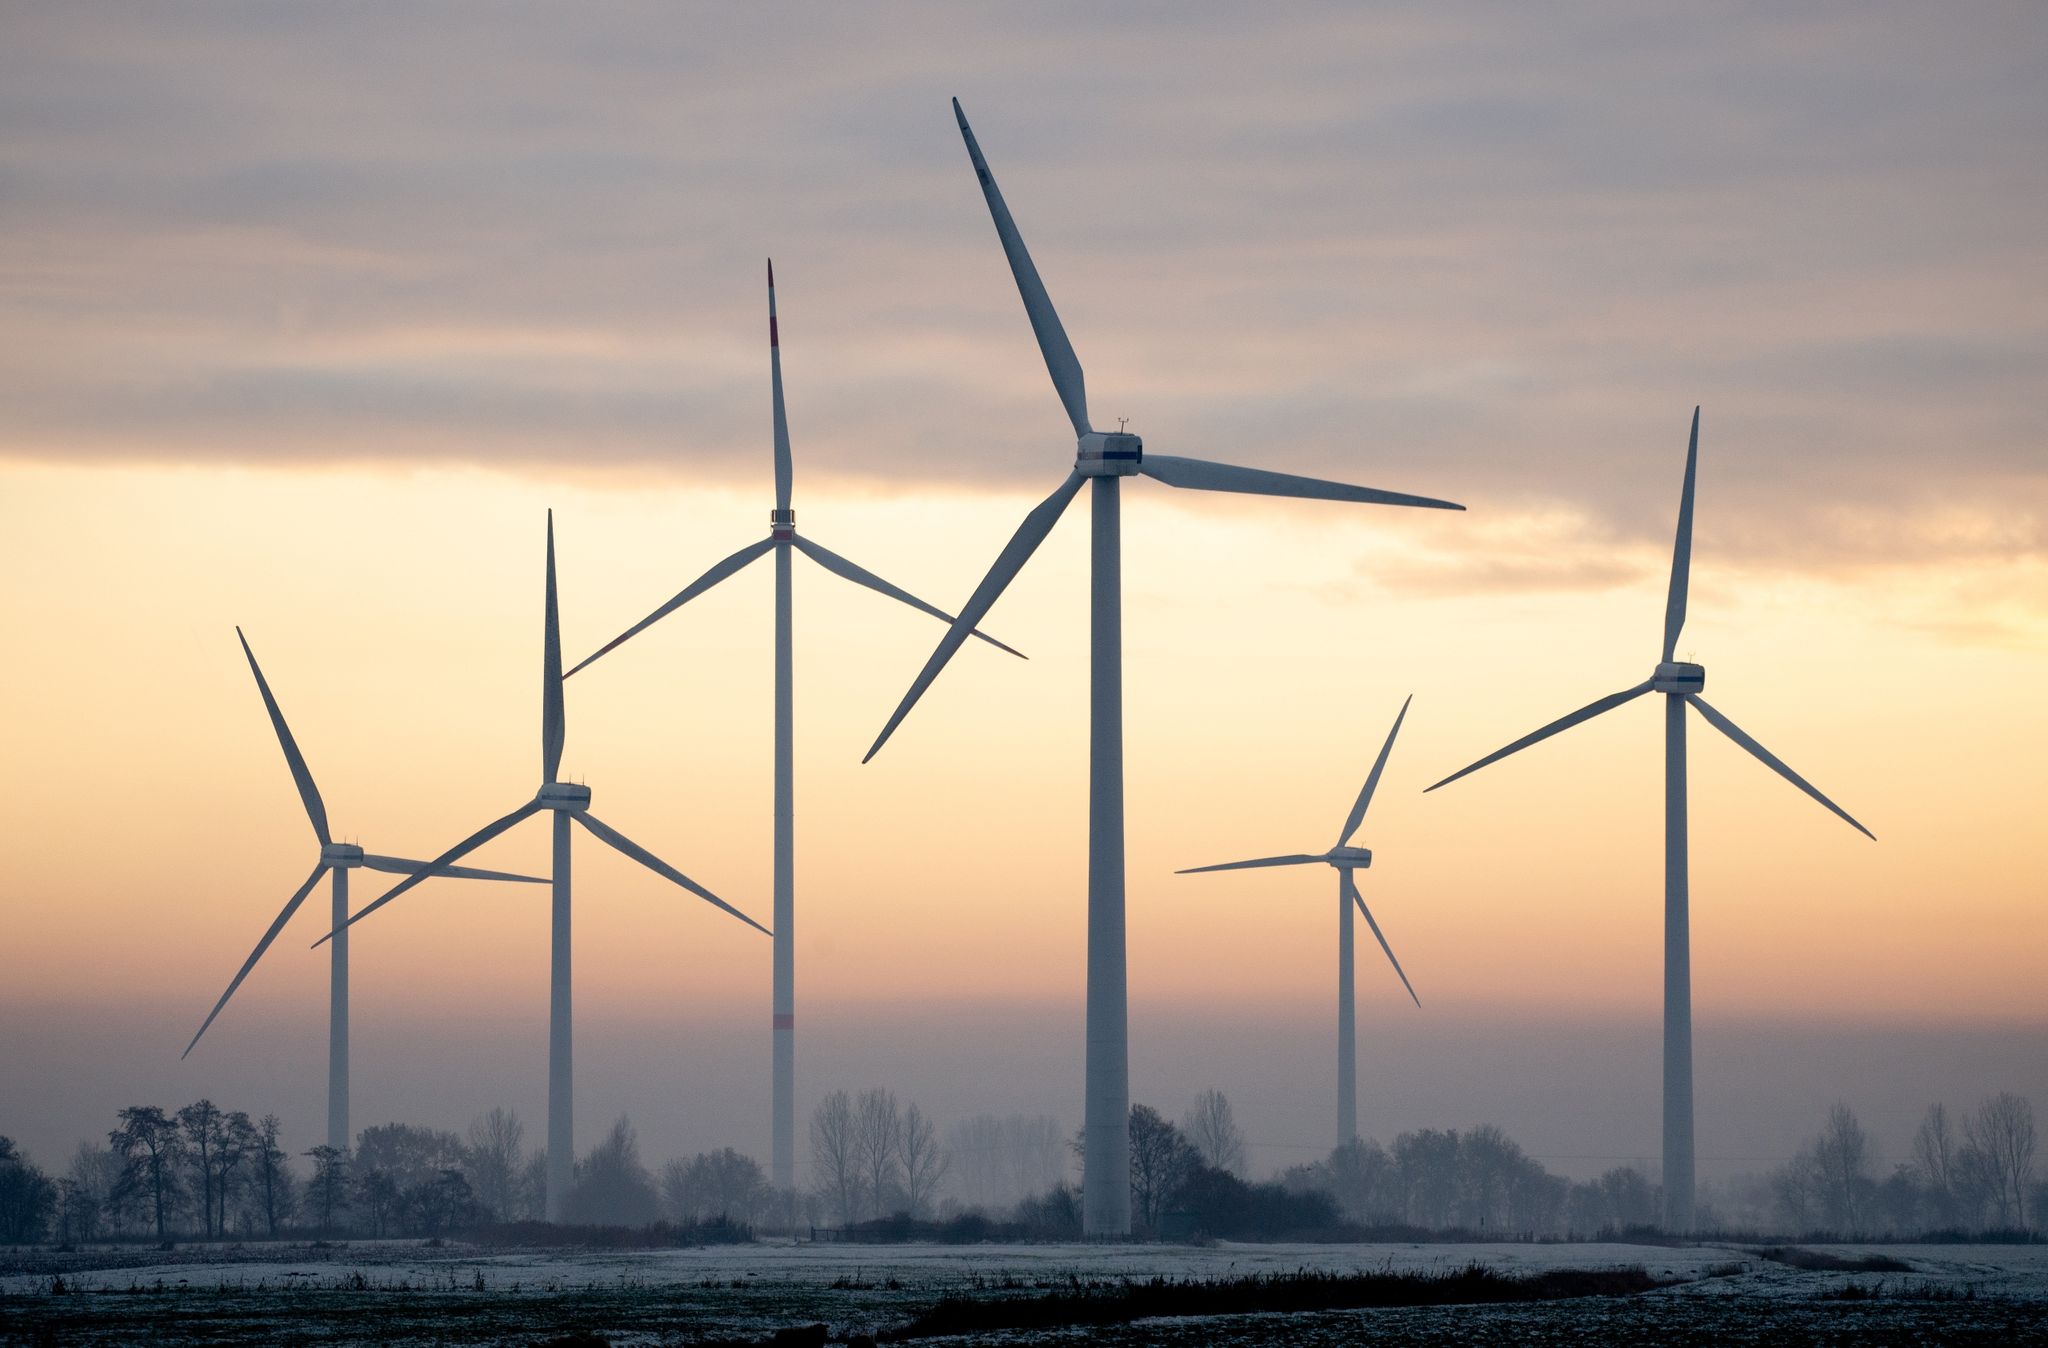 Nach Angaben des Fraunhofer-Instituts für Solare Energiesysteme liegt der Windkraft-Anteil an der Stromerzeugung im laufenden Jahr bei 24,3 Prozent.